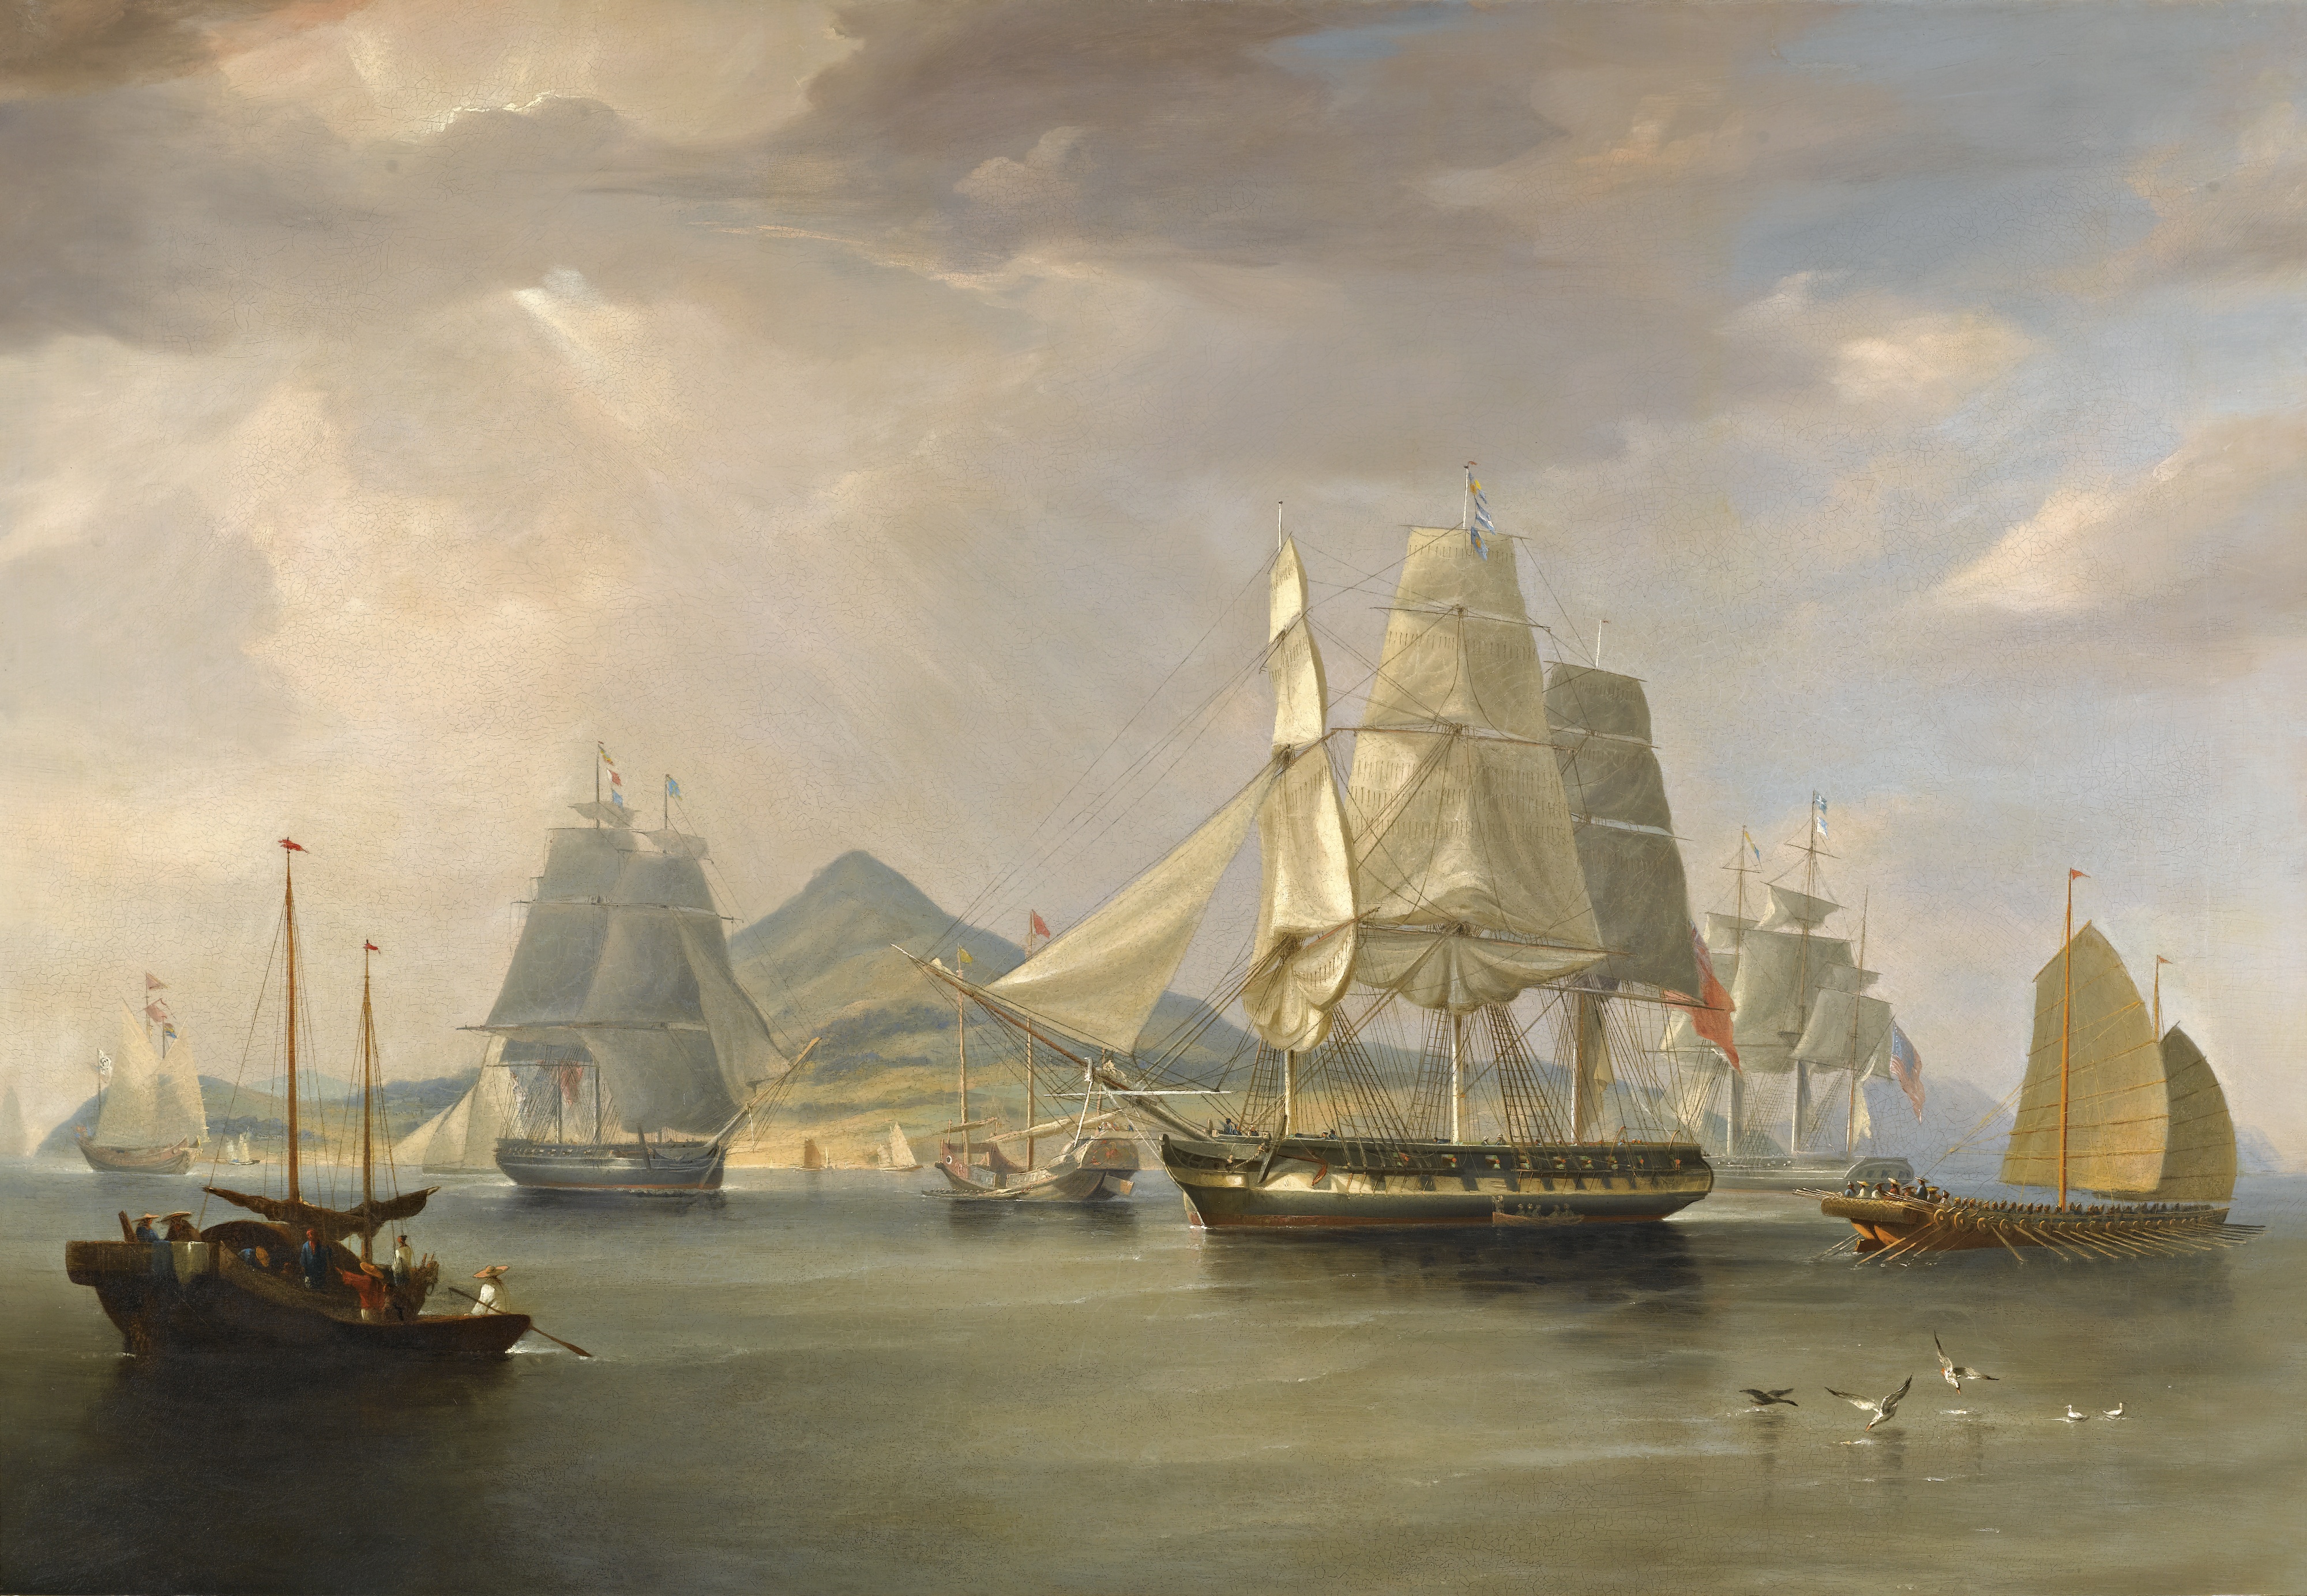 A depiction of British opium ships at Lintin, China, 1824